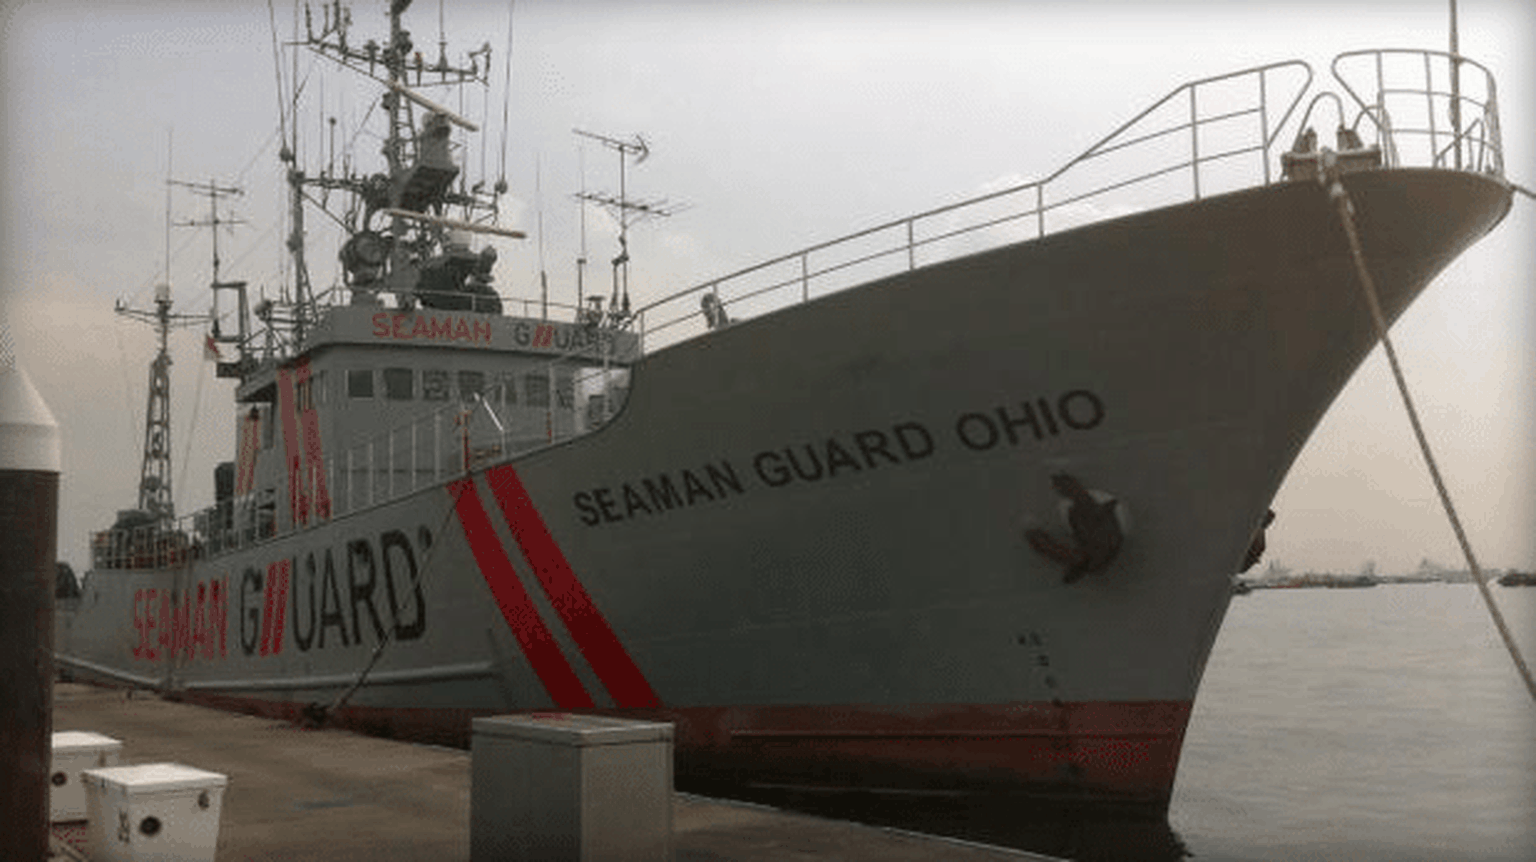 The vessel Seaman Guard Ohio.